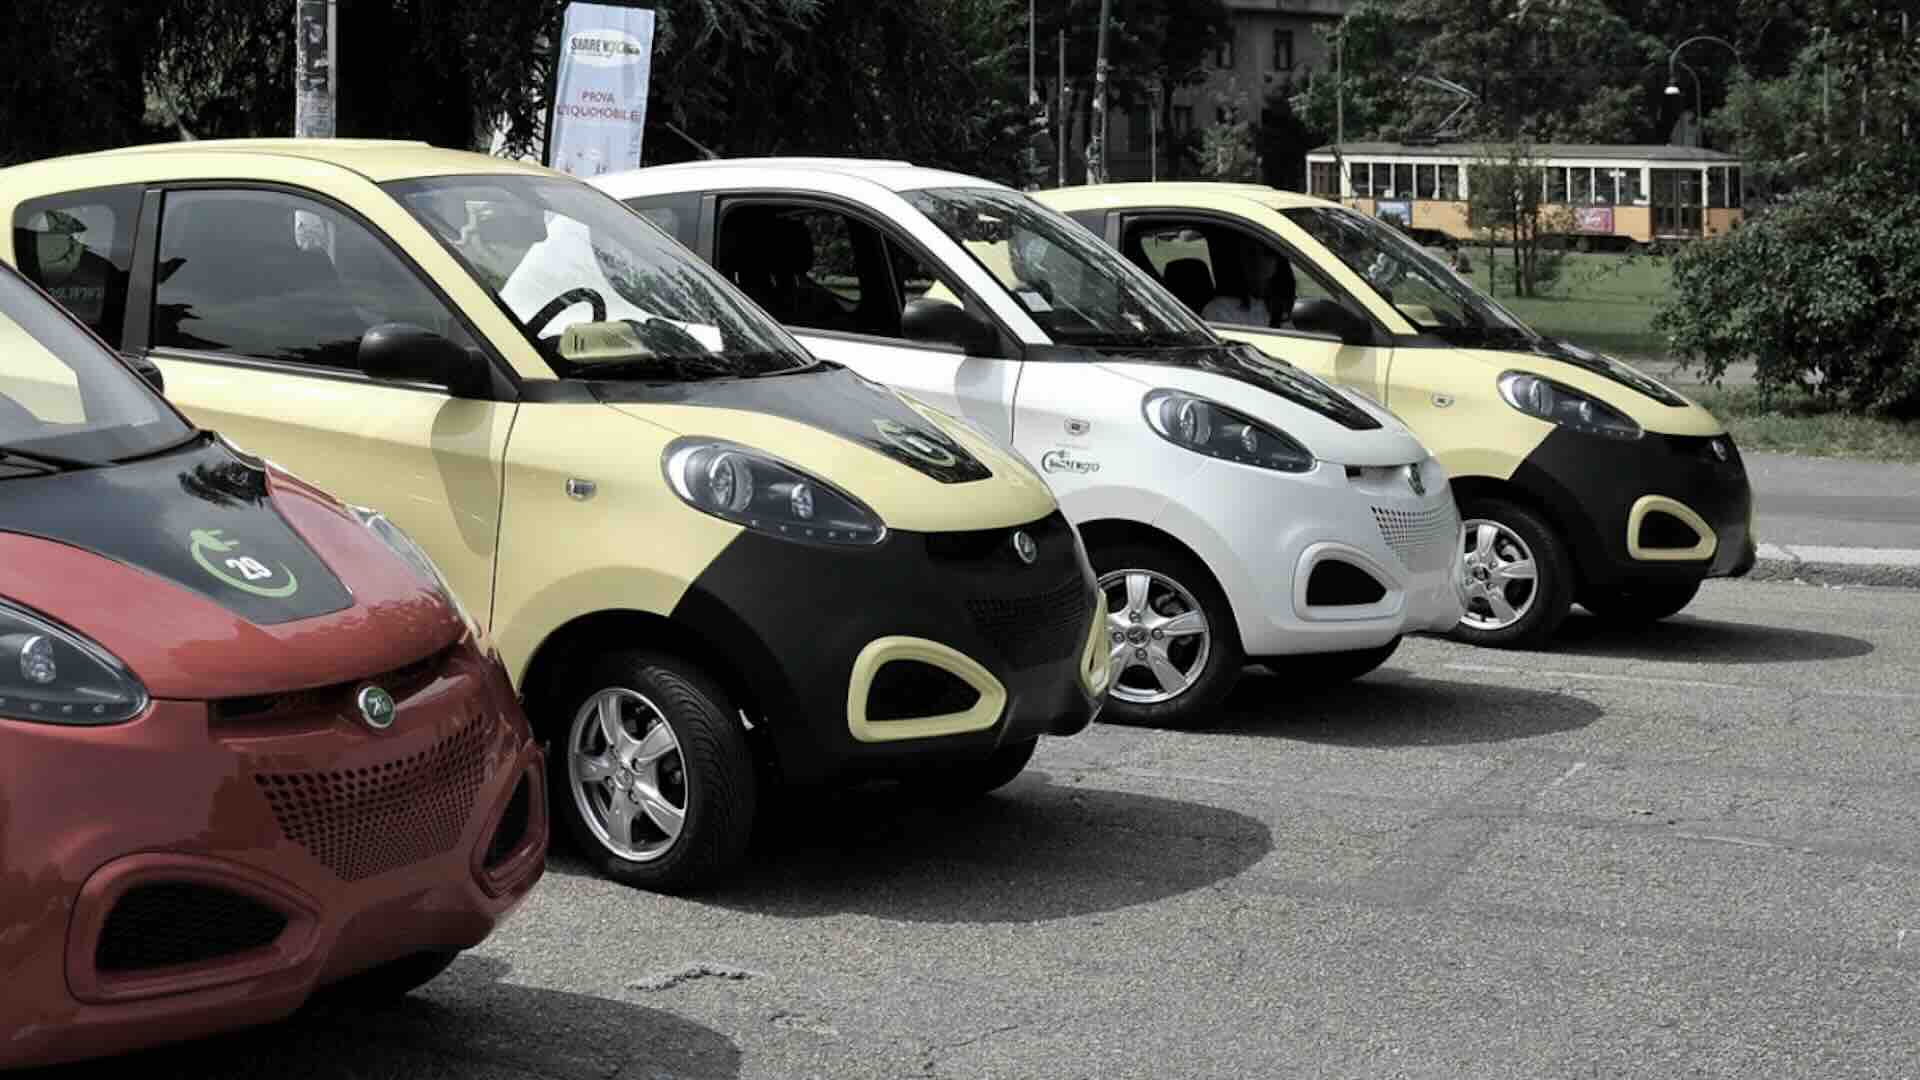 Milano bando per noleggio auto in sharing station based per concessioni fino al 2026